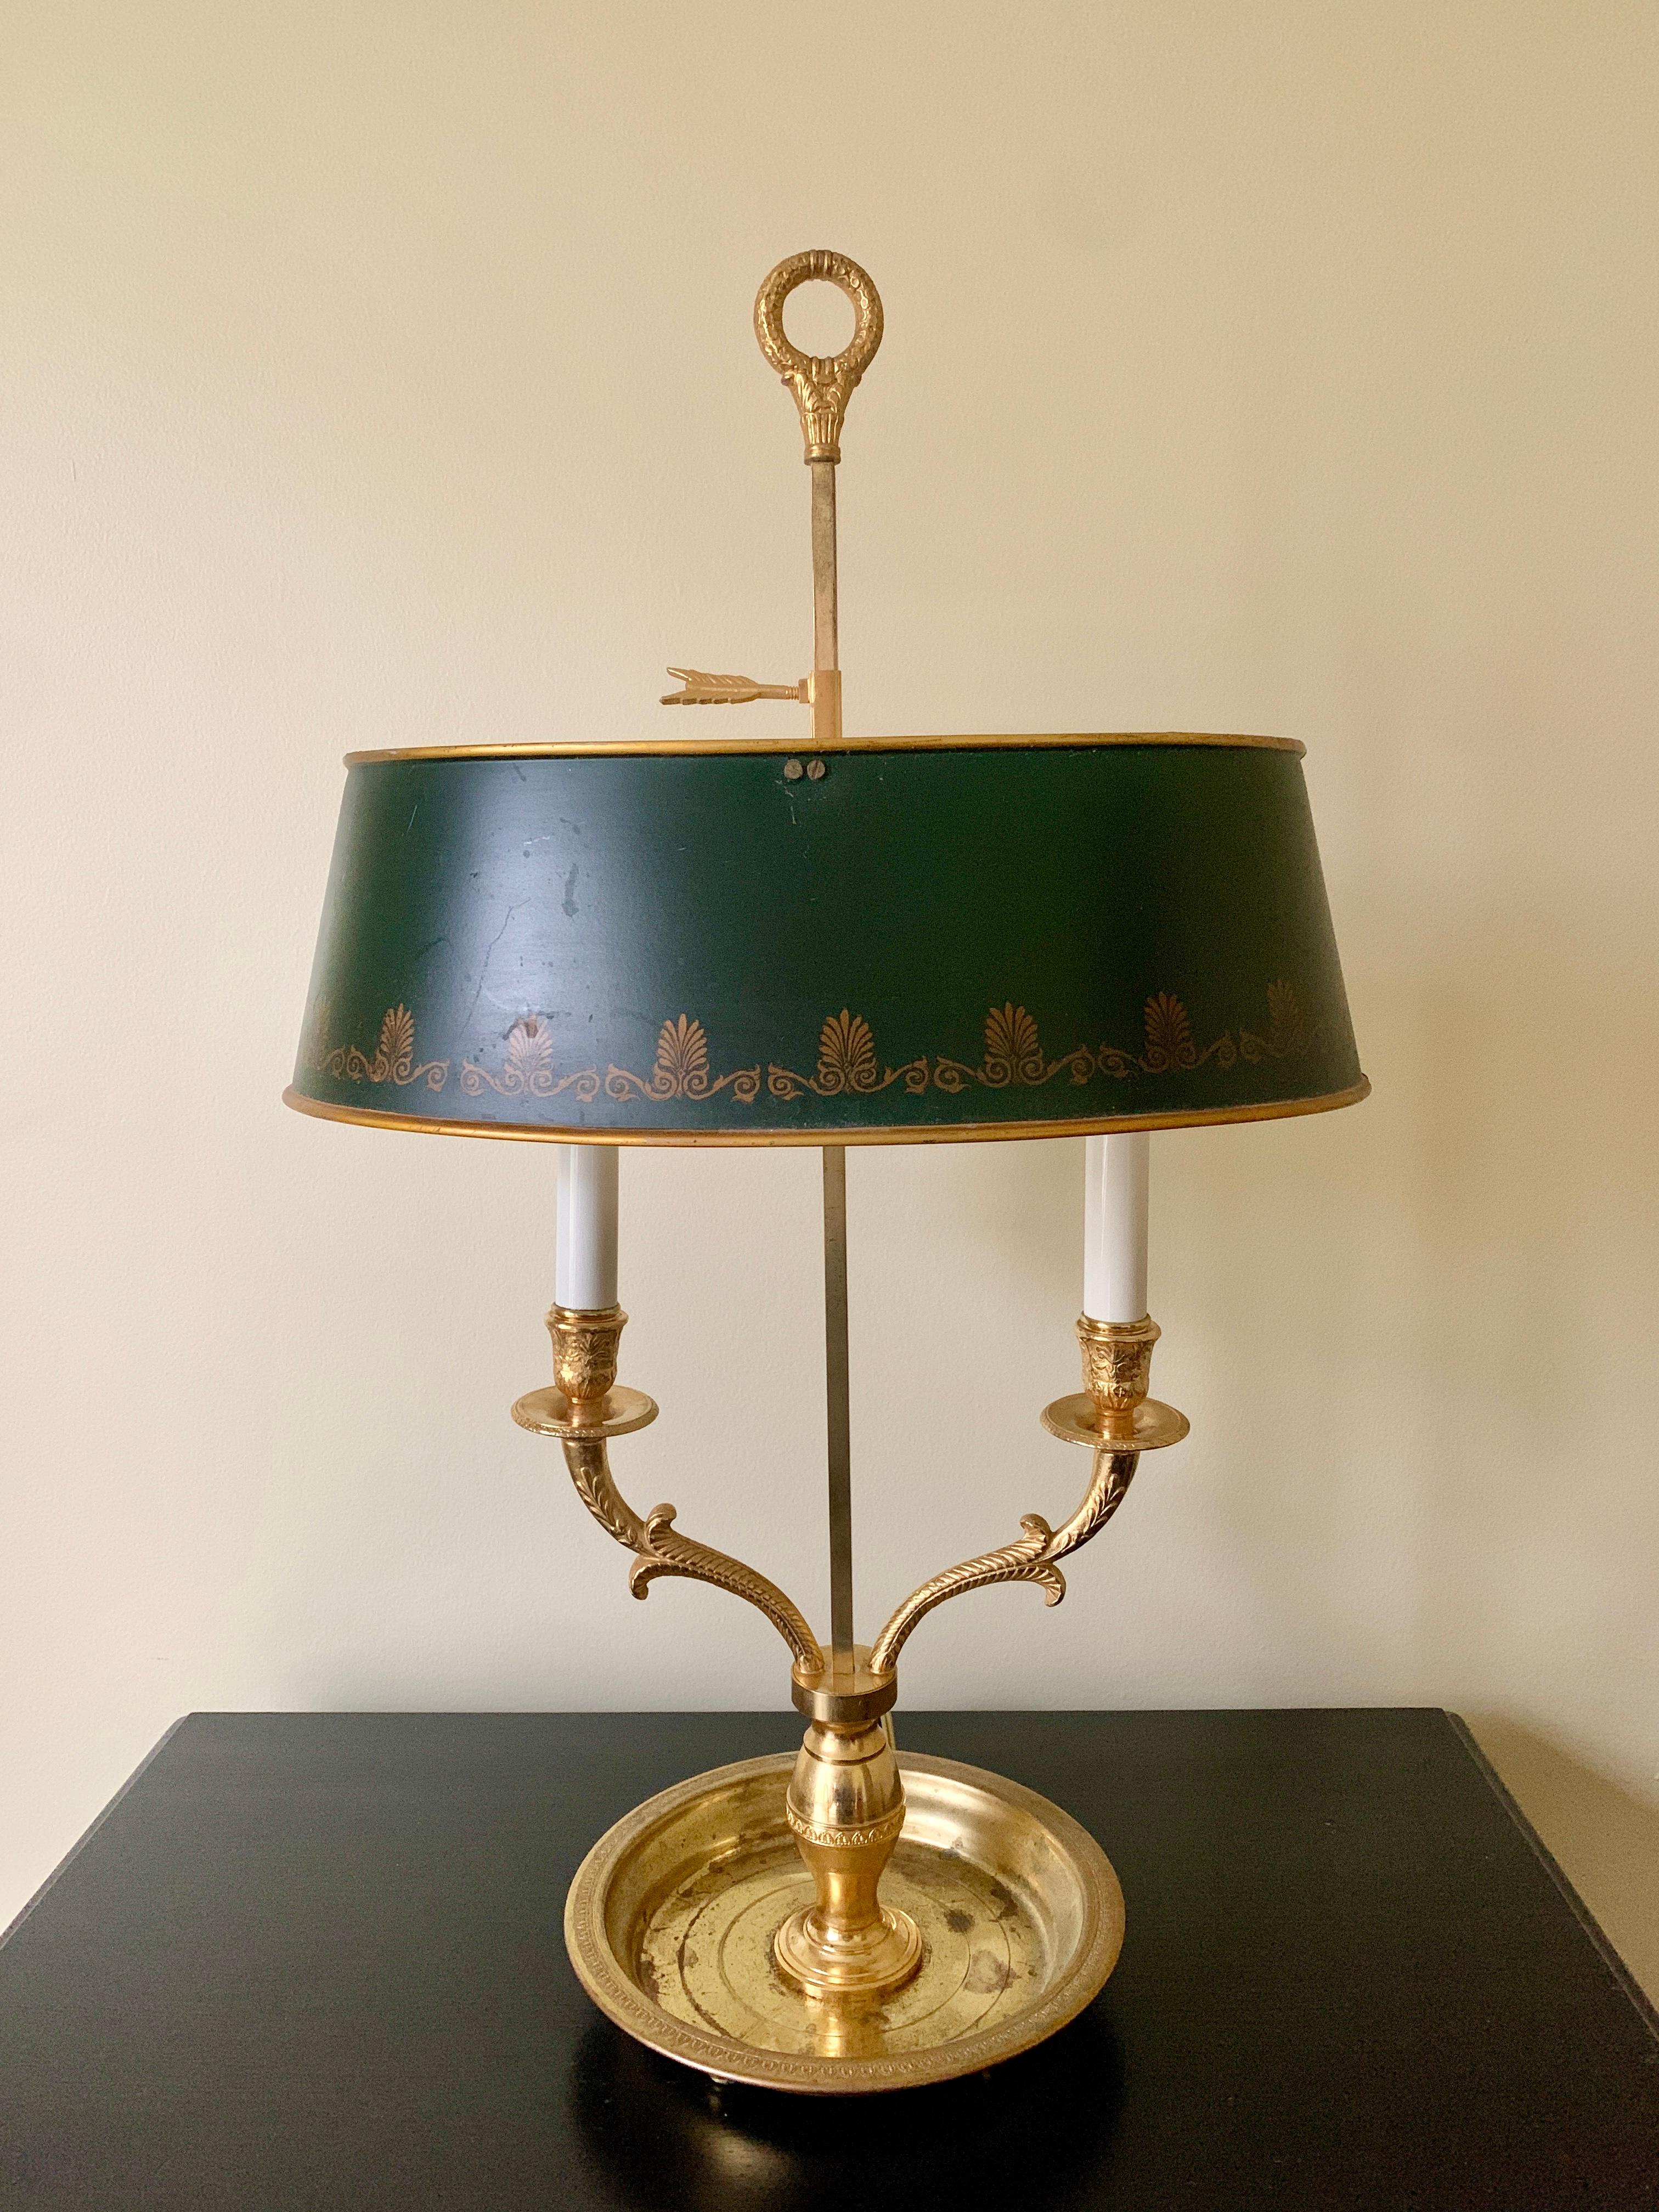 Wunderschöne Bouillotte-Lampe aus massivem Messing im französischen Stil mit schabloniertem grünem Tole-Schirm

USA, Mitte des 20. Jahrhunderts

Maße: 14,75 